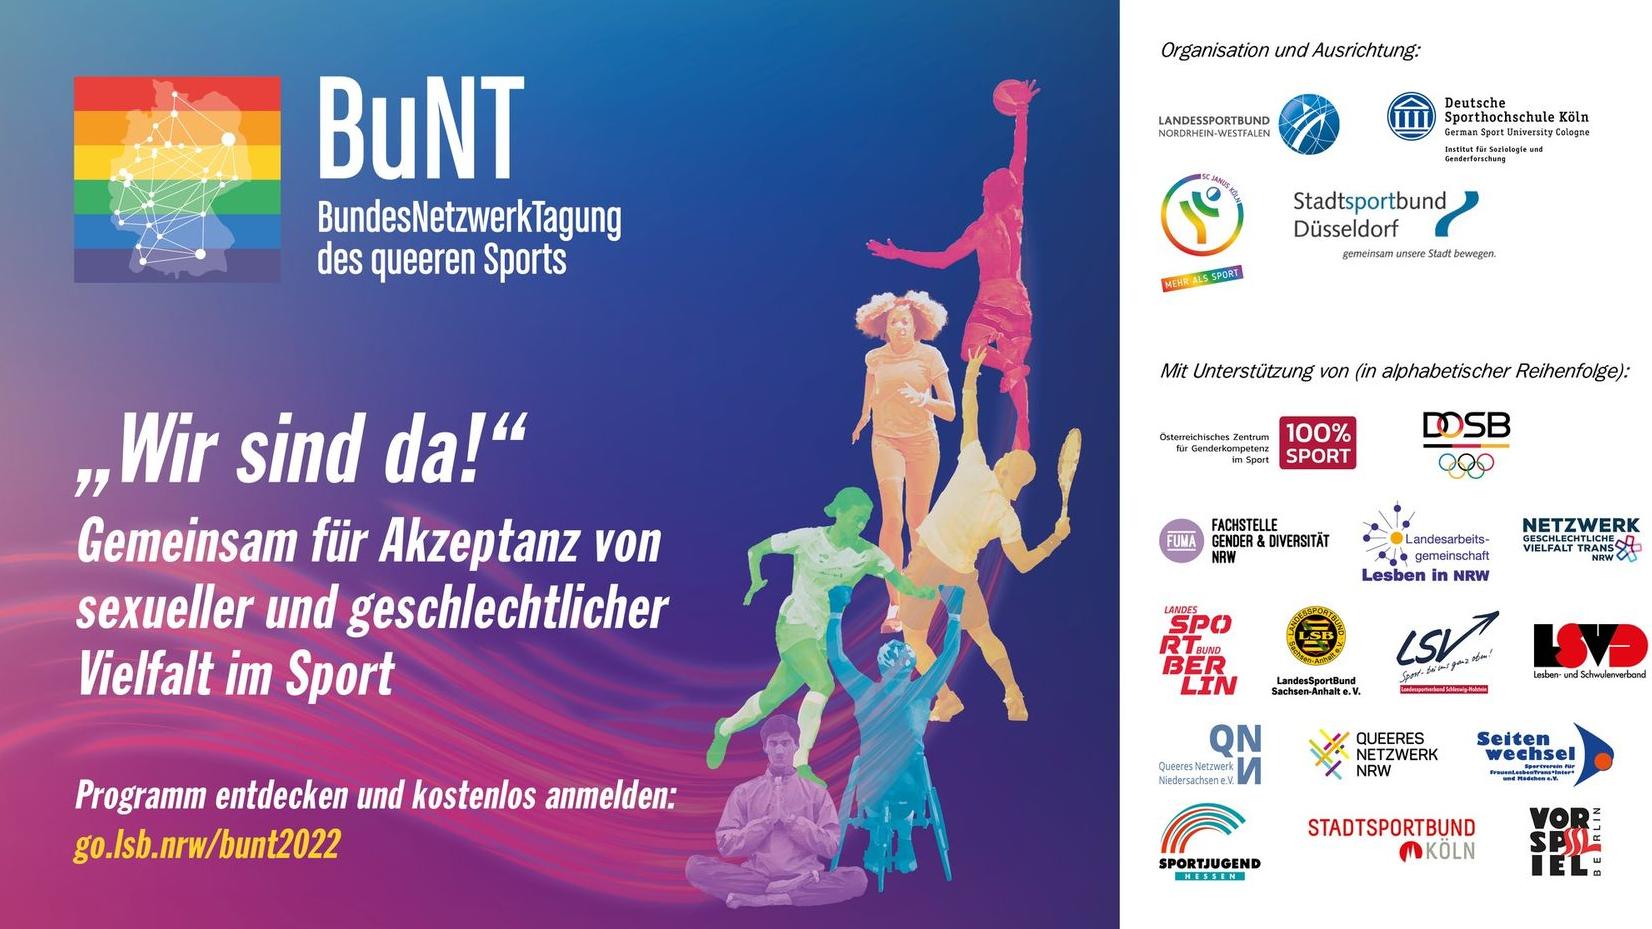 Die 5. BundesNetzwerkTagung des queeren Sports (BuNT) bietet auch in diesem Jahr eine wichtige Plattform, um sich mit queeren Belangen, Teilhabe und Chancengleichheit im Sport auseinanderzusetzen